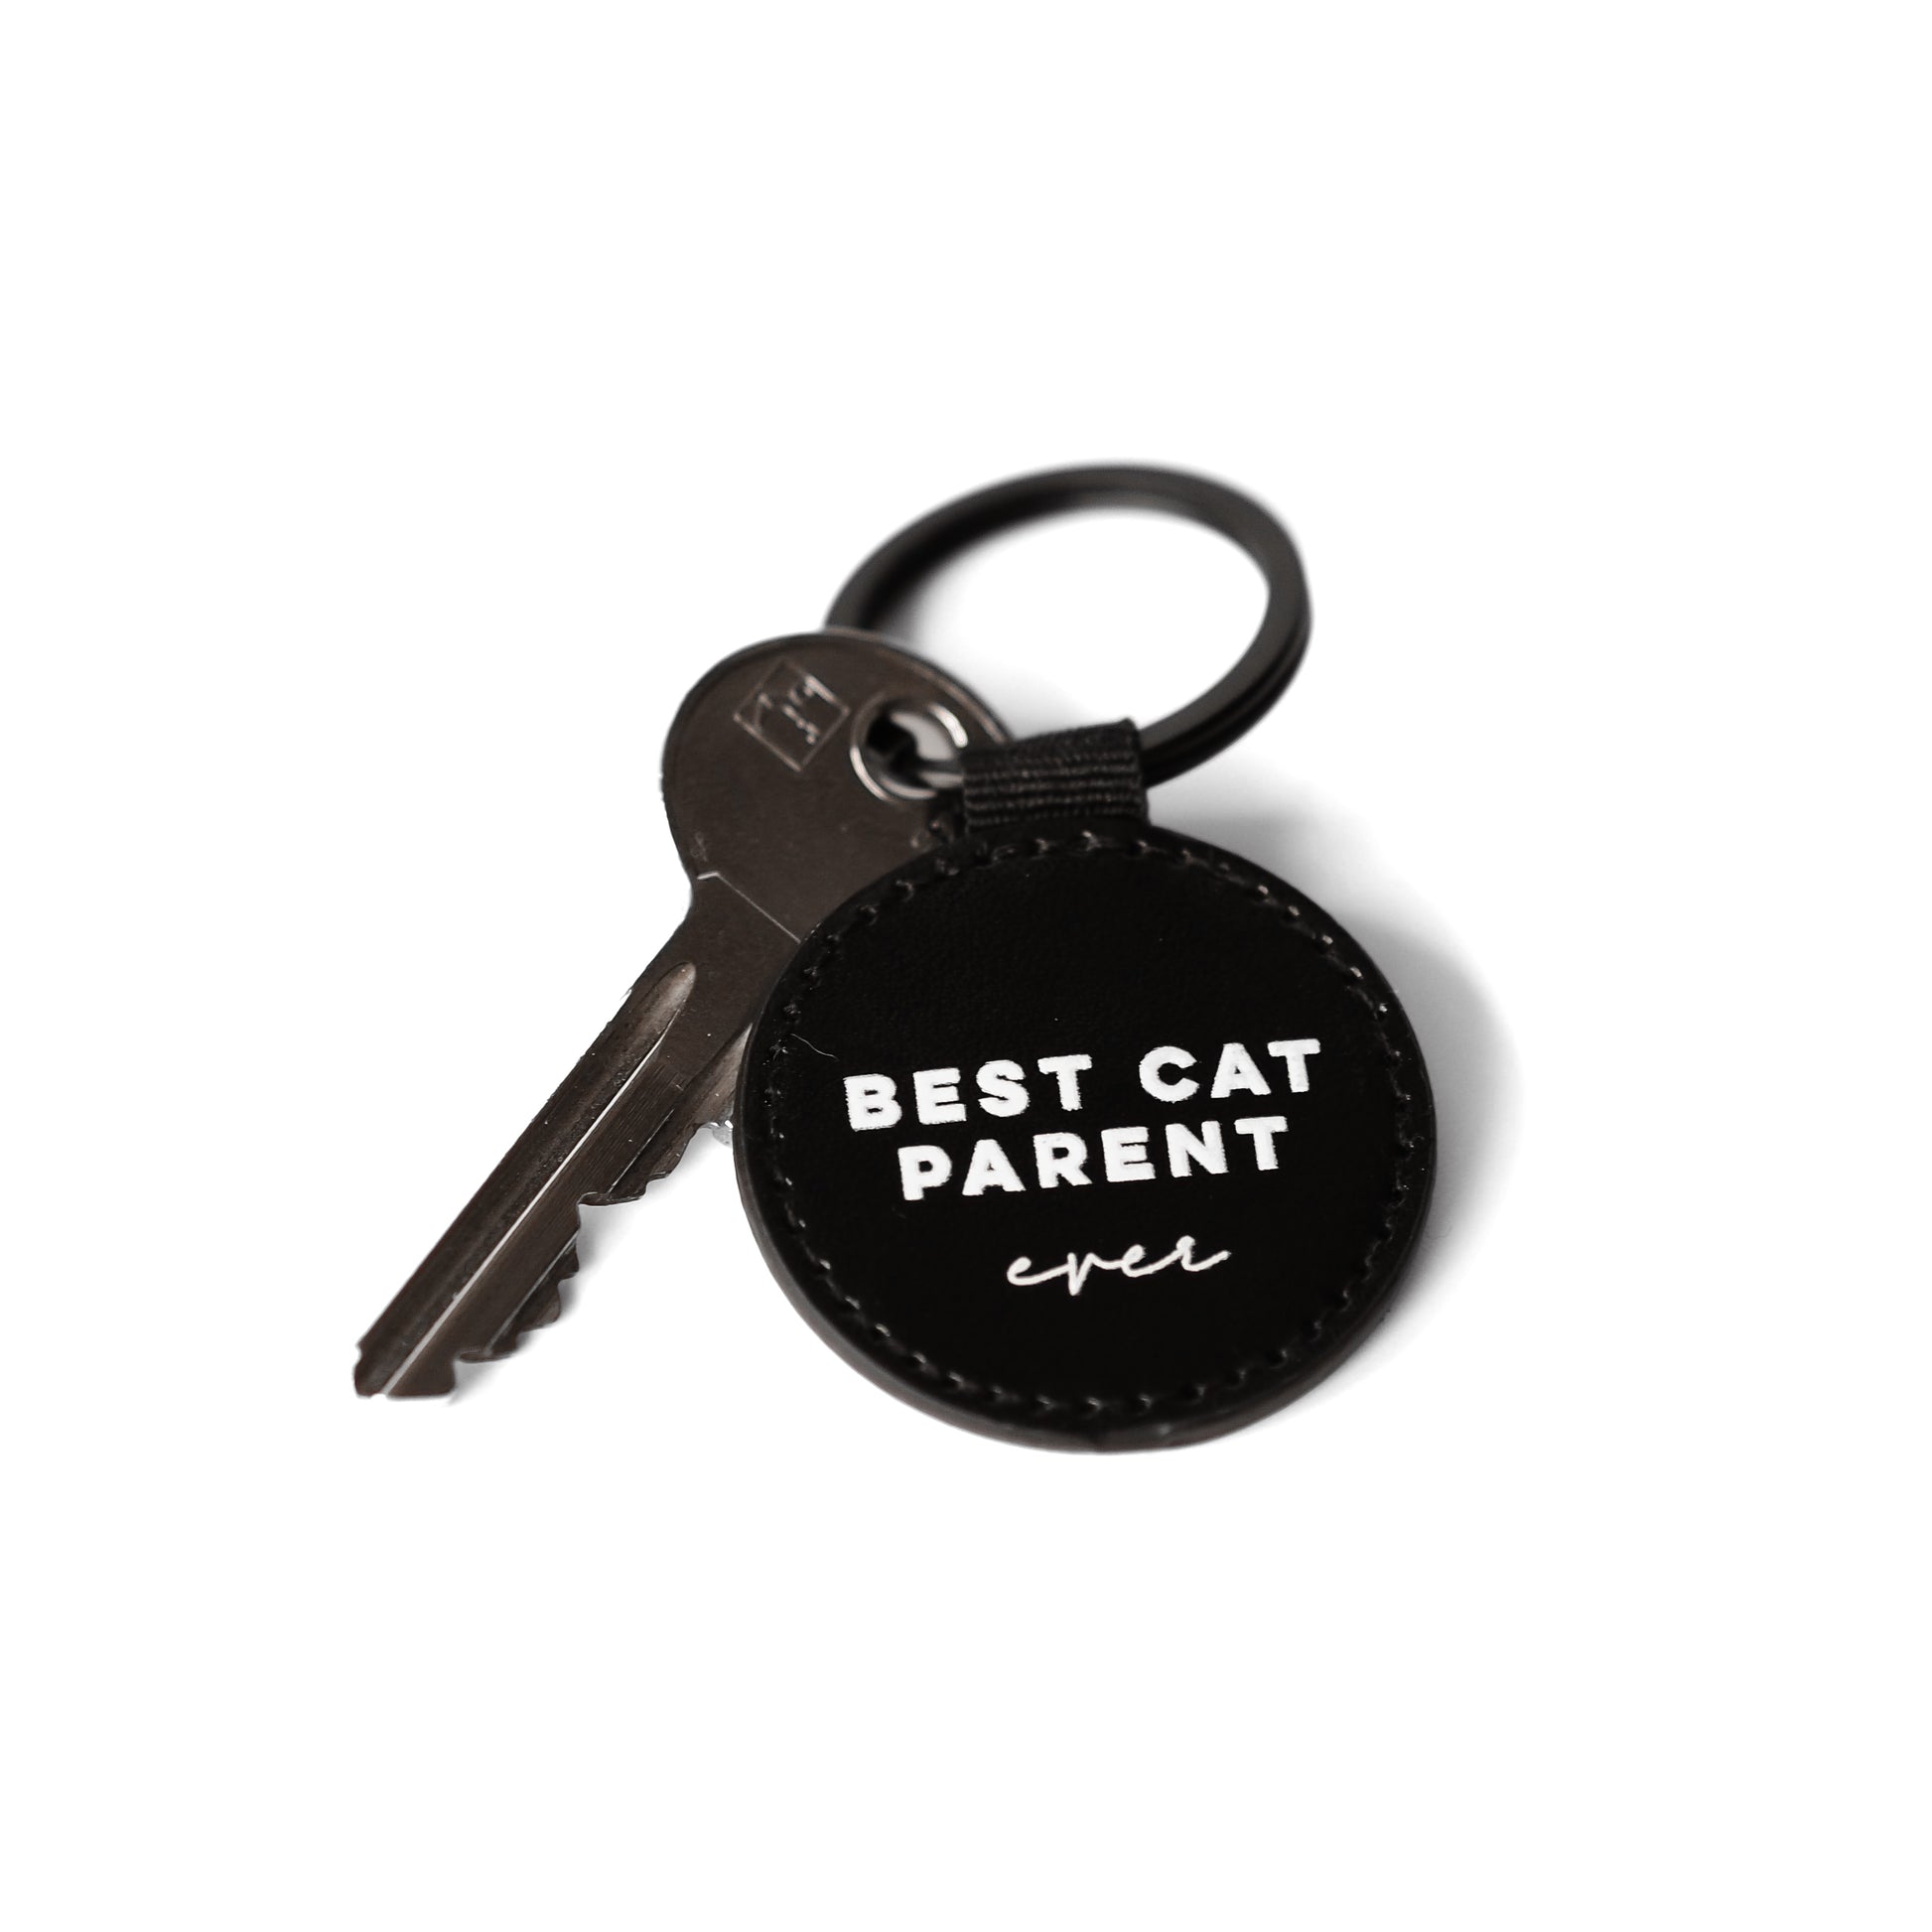 Catmom Schlüsselanhänger in schwarz mit weißem Aufdruck "Best Cat Parent" 